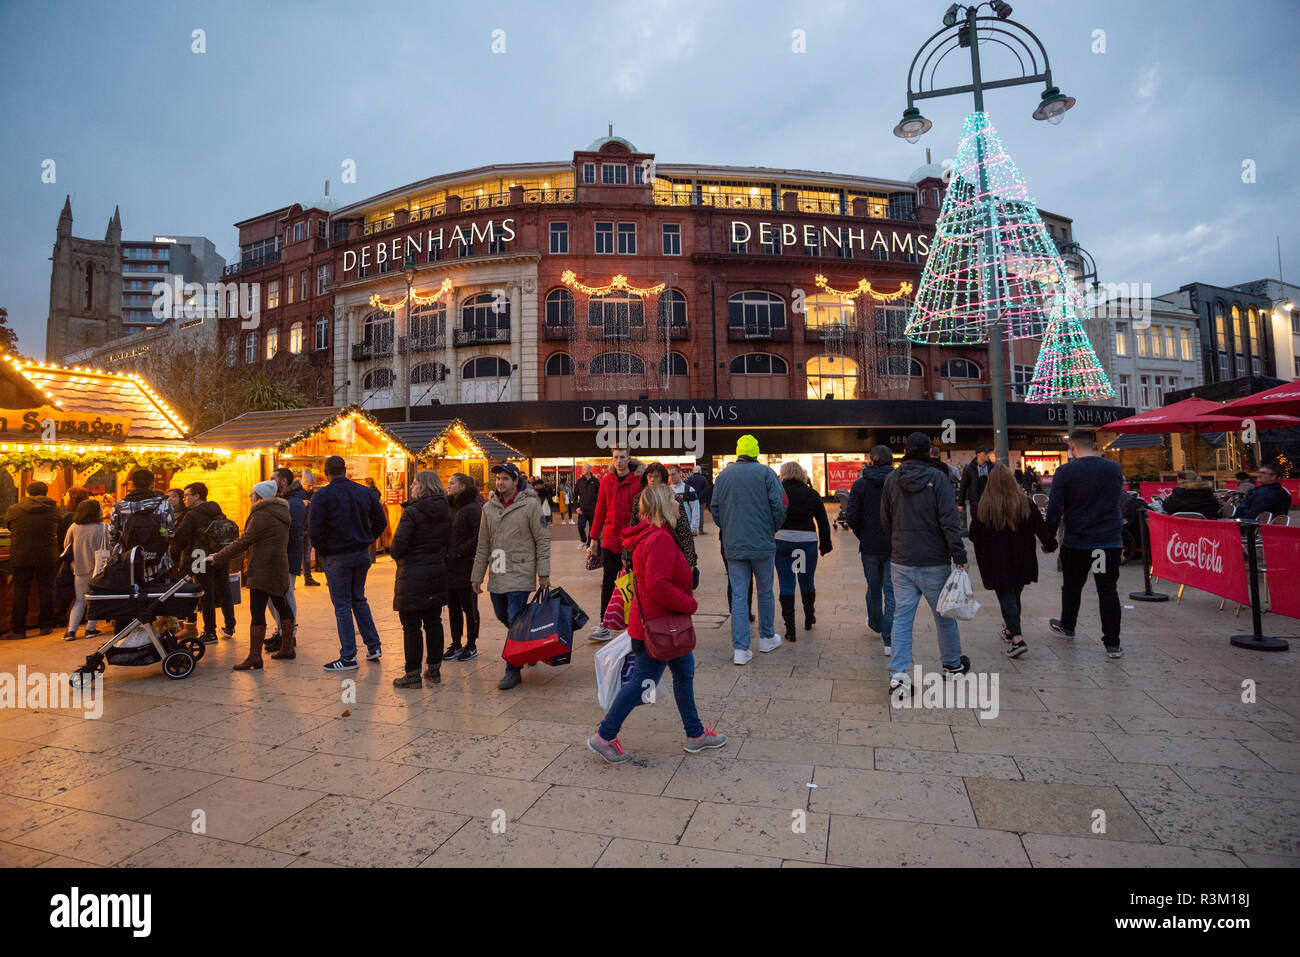 Les amateurs de shopping du Black Friday se trouvent sur la place, à l'extérieur du grand magasin Debenhams, avec un marché de Noël et une scène festive dans le centre commercial de la ville, Bournemouth, Dorset, Angleterre, Royaume-Uni, Novembre 2018. Banque D'Images